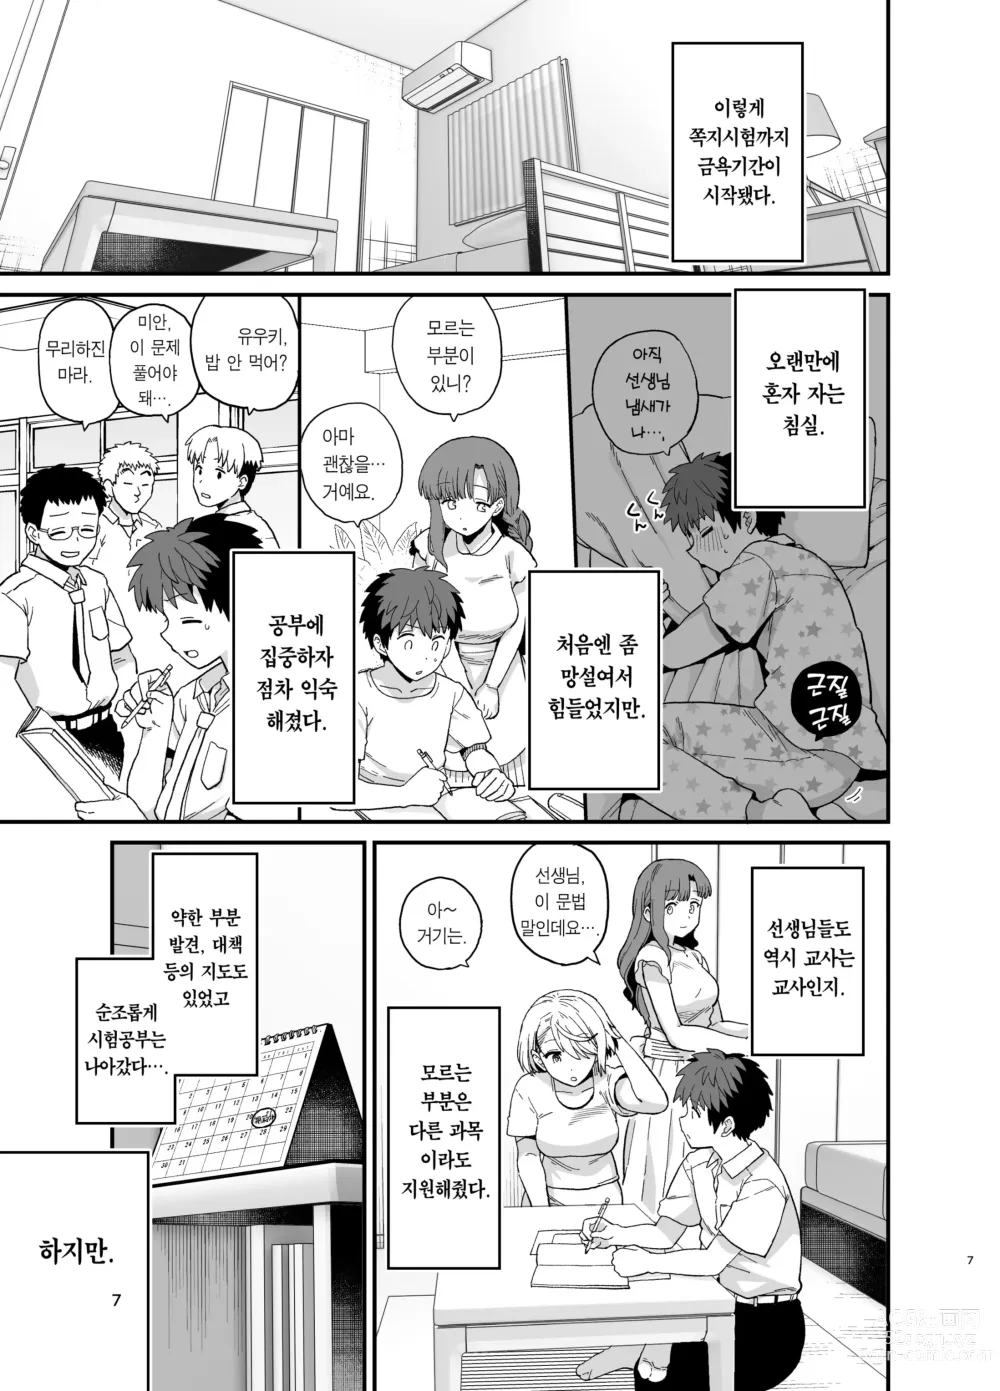 Page 8 of doujinshi 선택교화 2교시